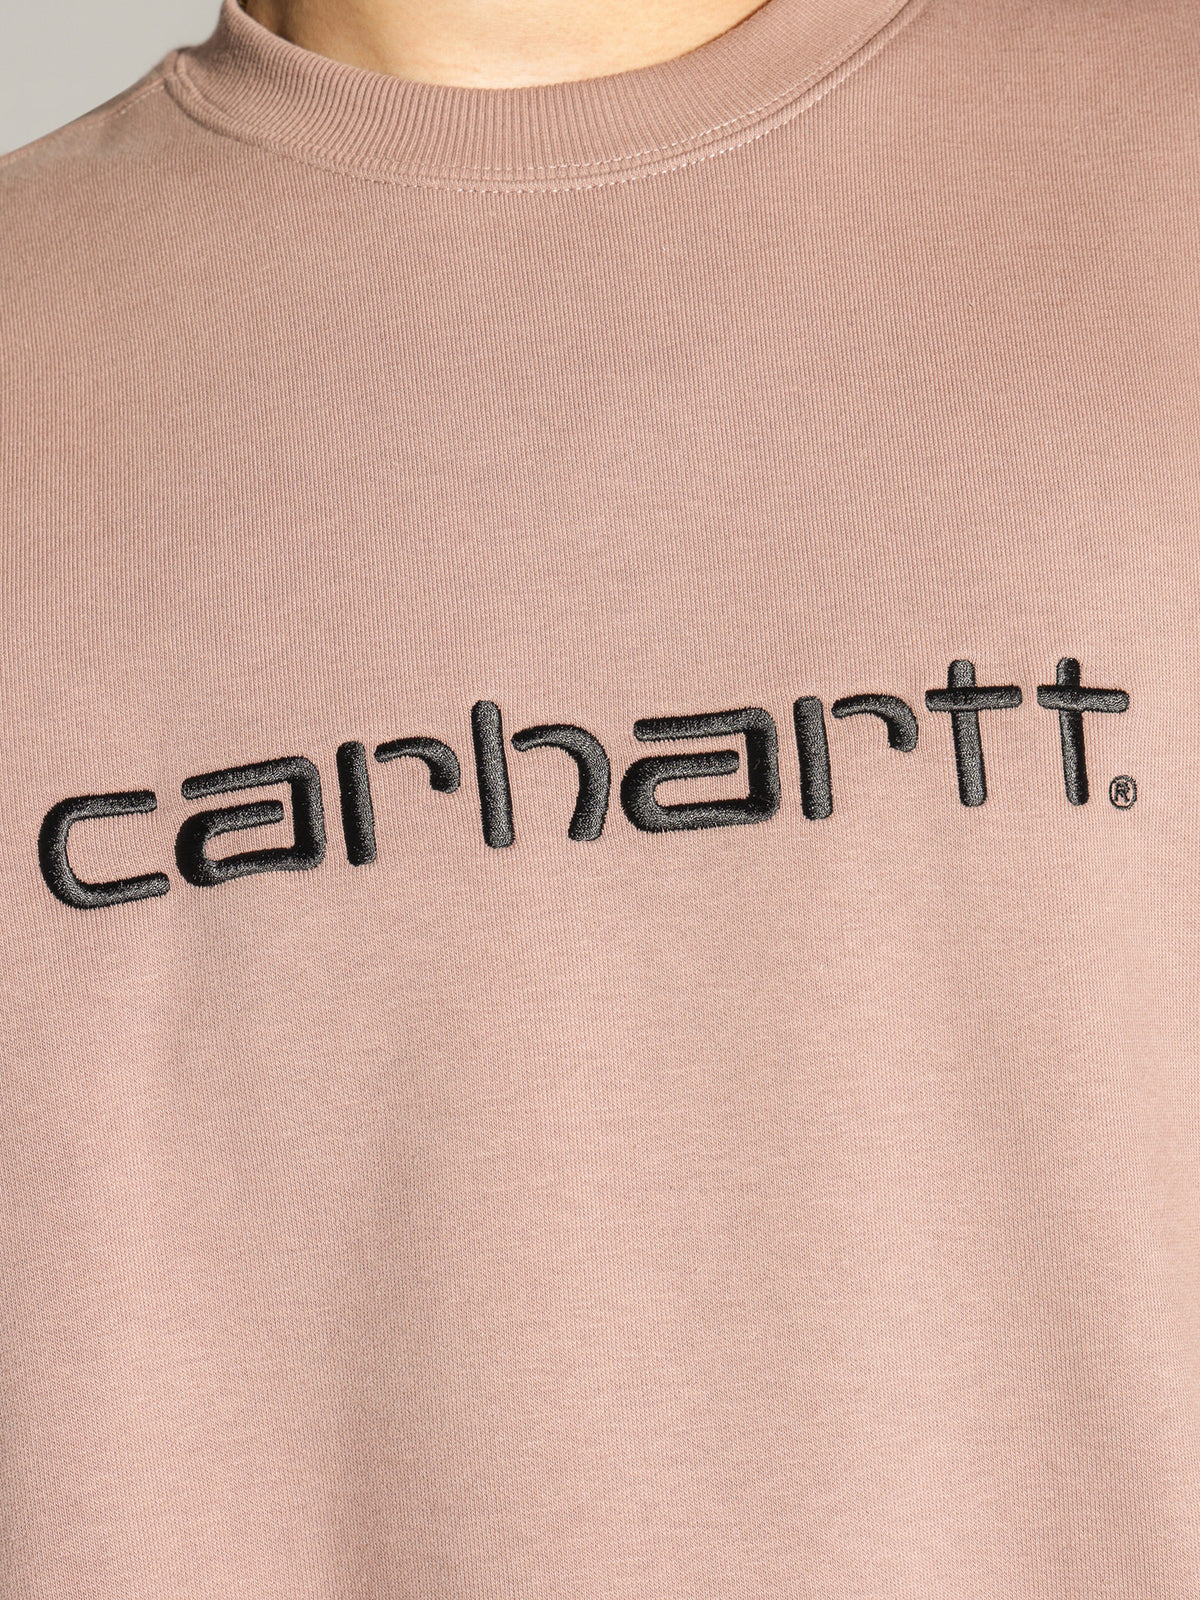 Carhartt Sweatshirt in Pink